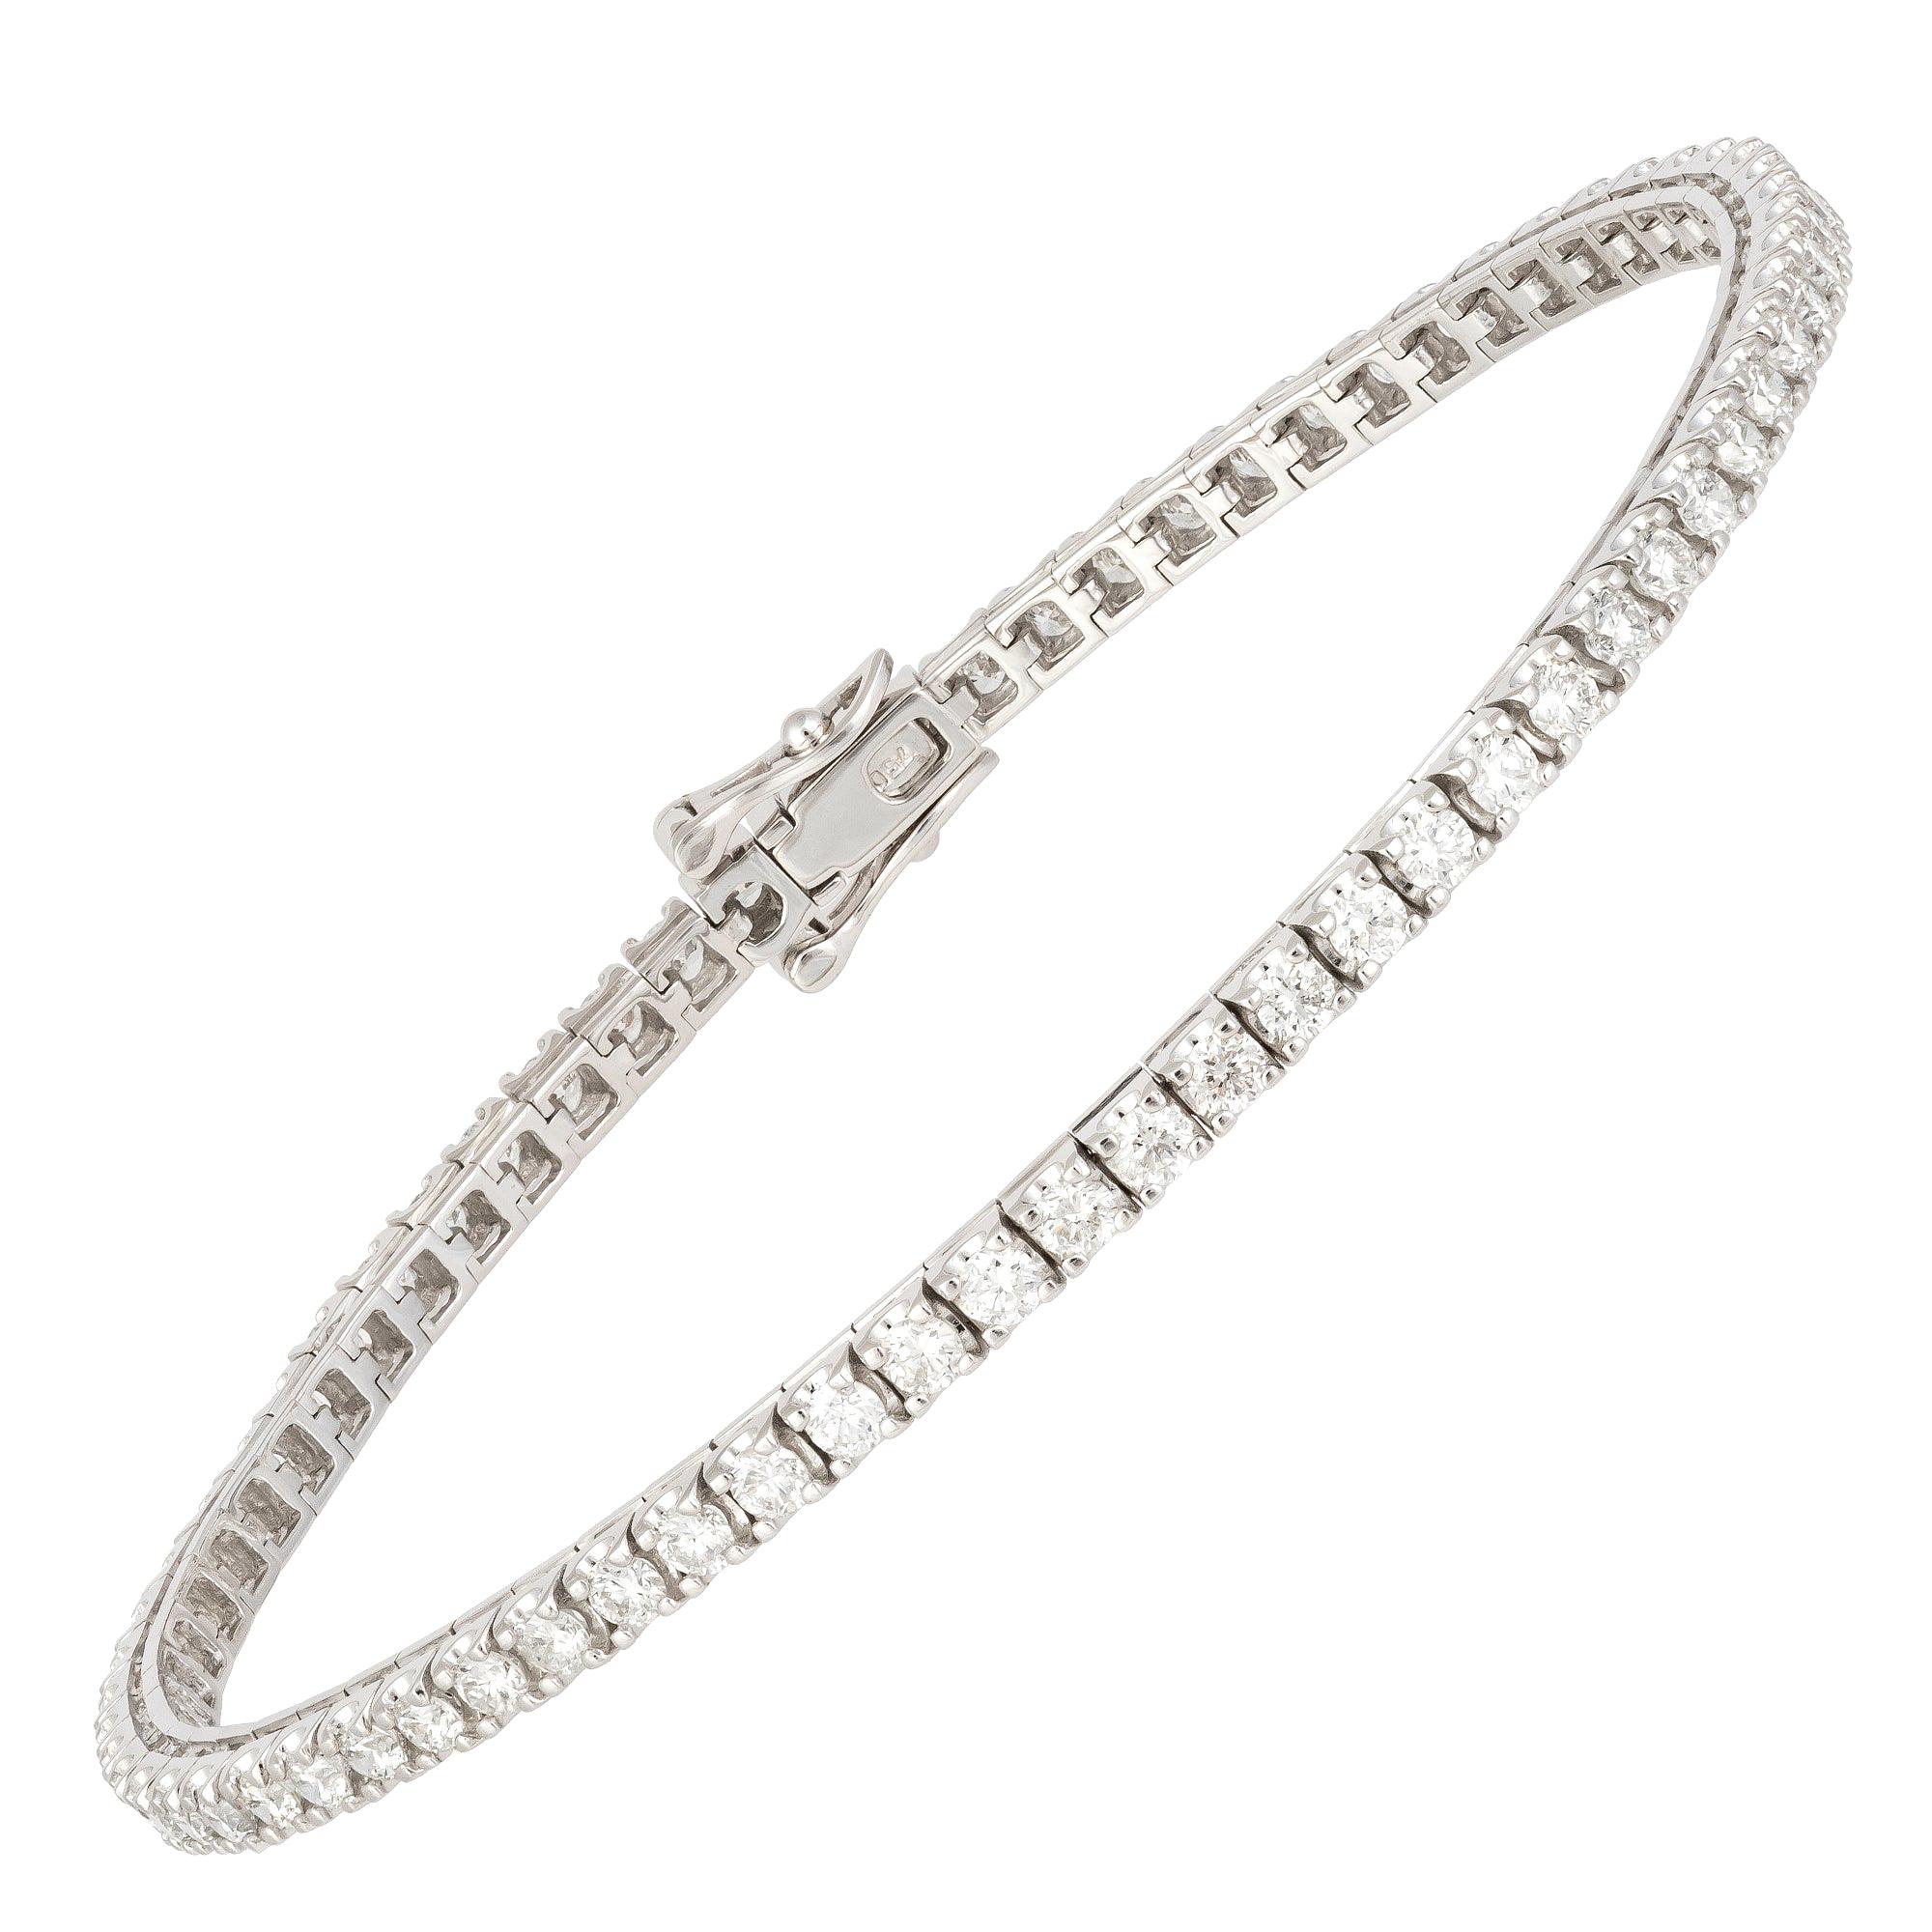 Bracelet tennis en or blanc 18 carats avec diamants 3,00 carats/69 pièces / diamants 3,00 carats